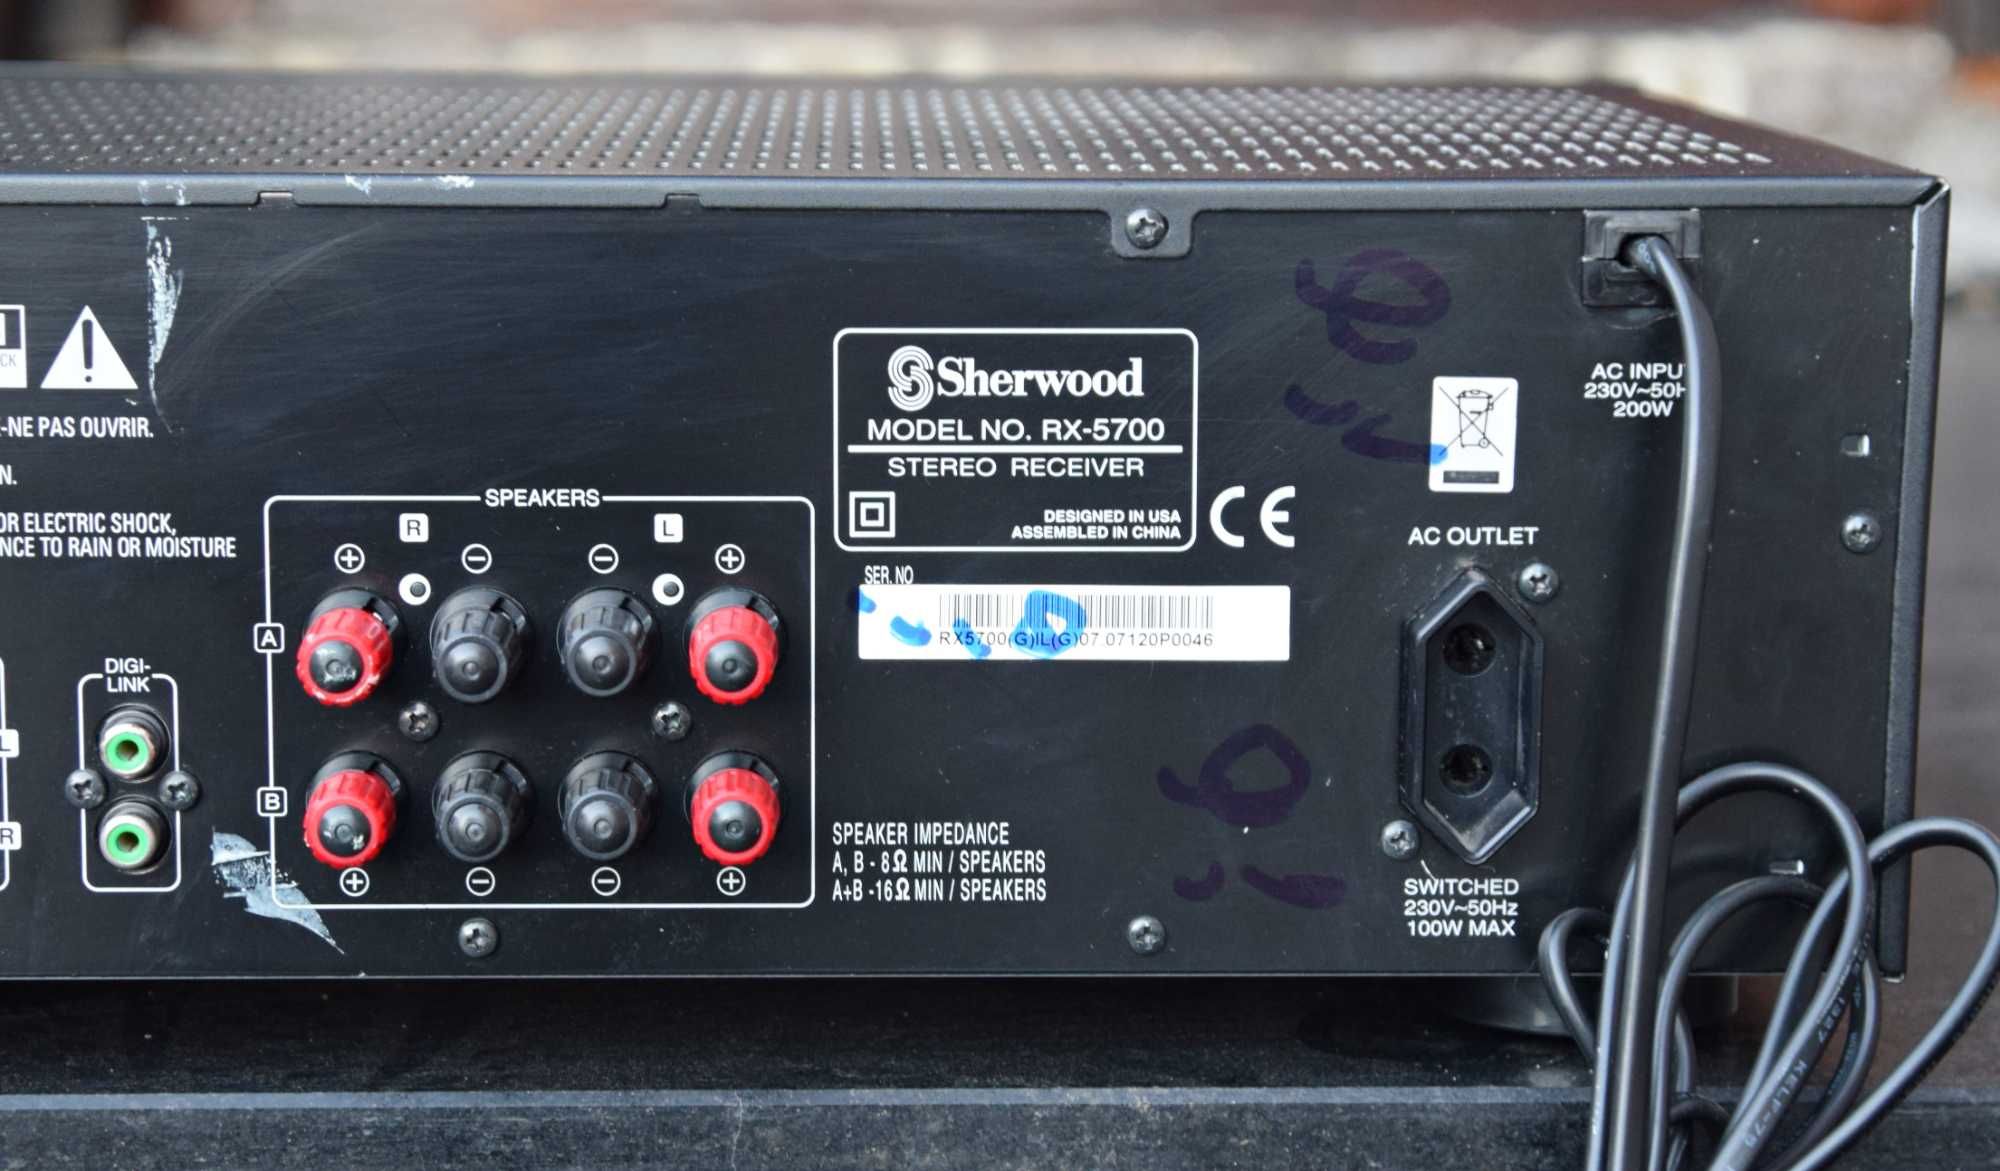 Amplificator Sherwood RX-5700, AV Receiver